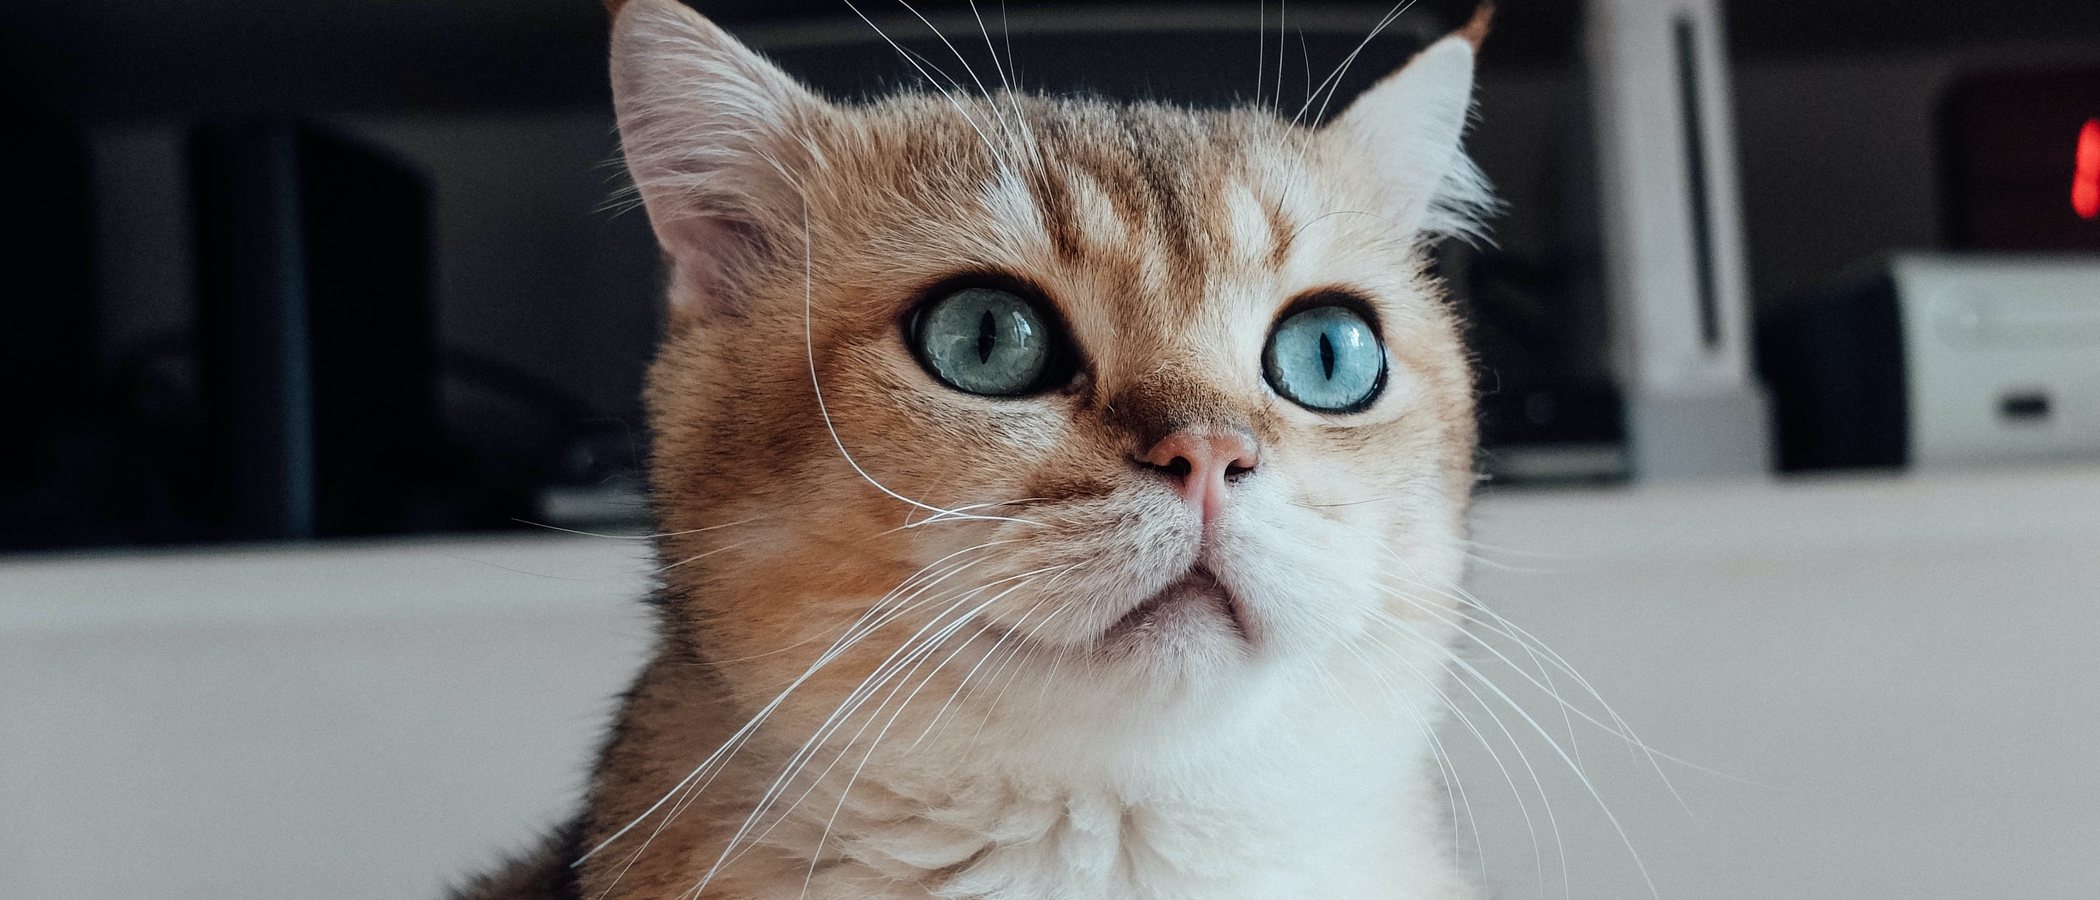 nicotina plan de estudios Expansión Enfermedades oculares en gatos - Bekia Mascotas